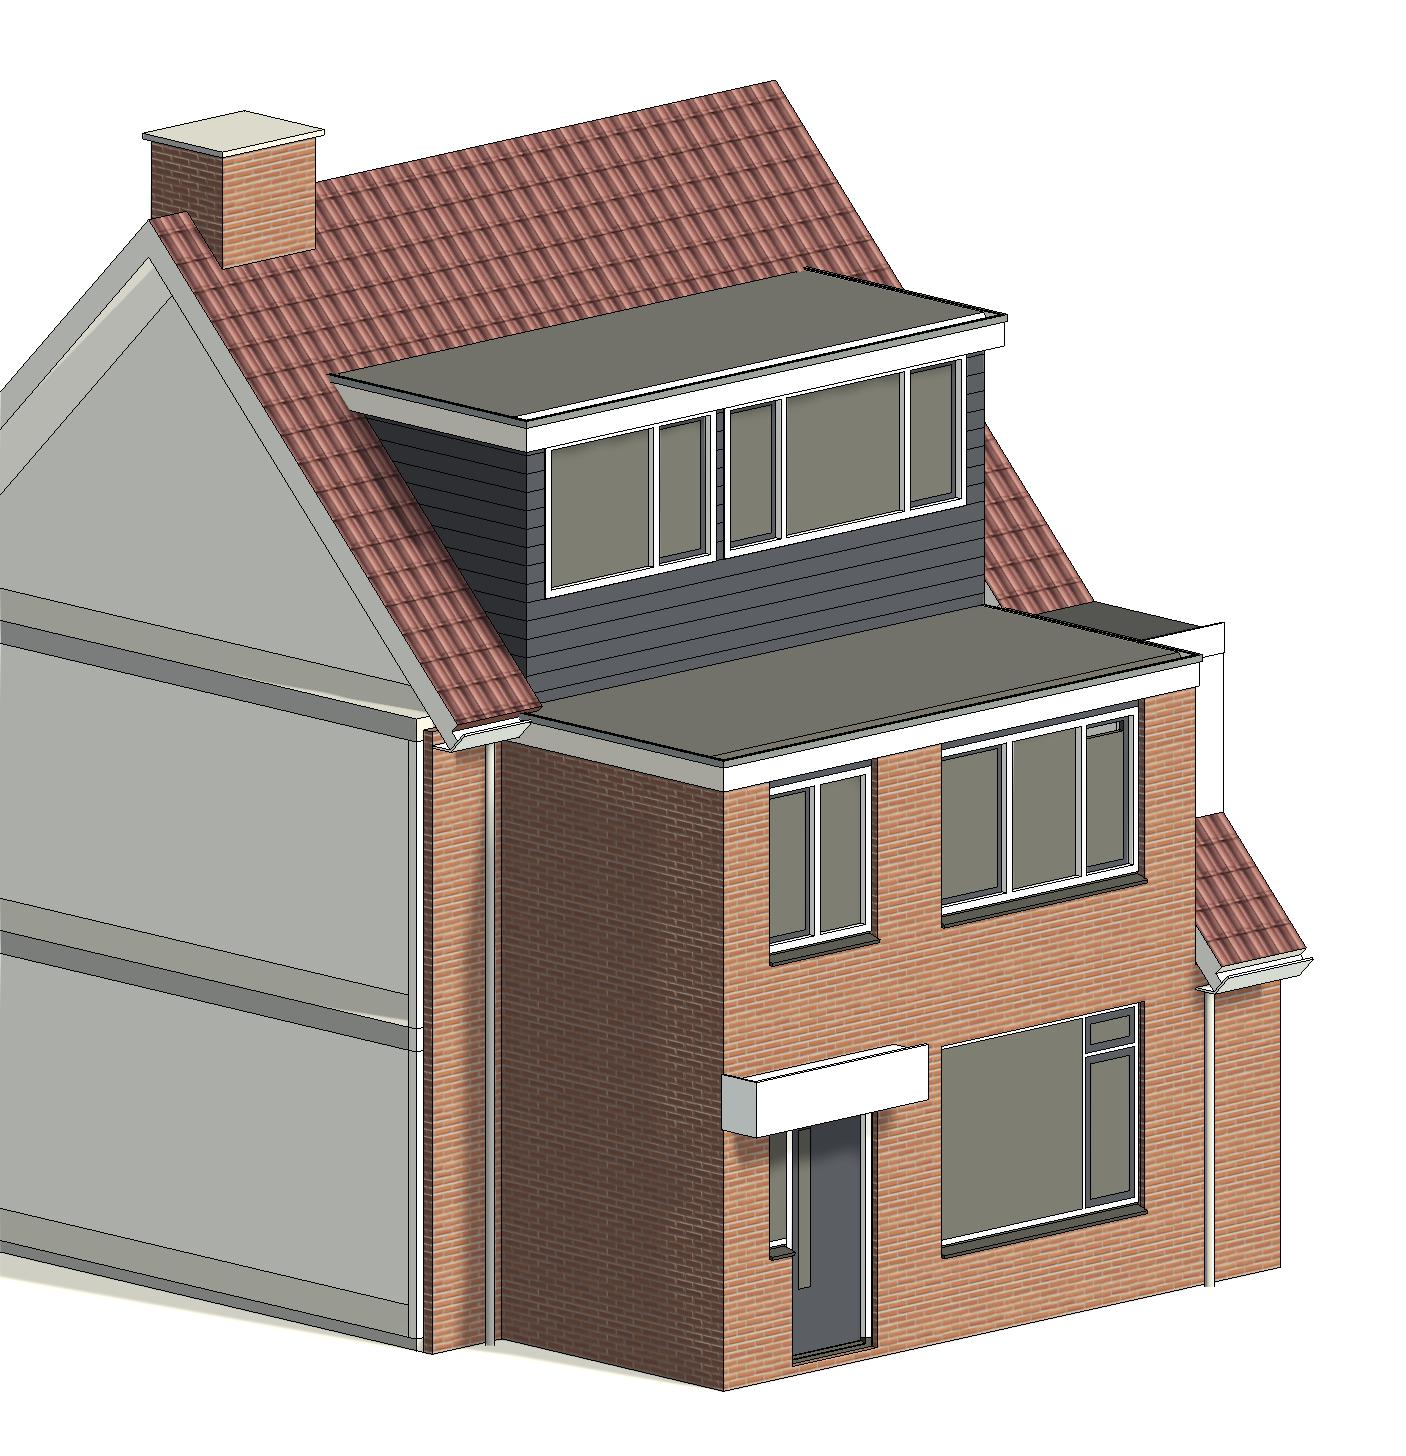 architect tekenbureau dakopbouw dakkapel oude wetering bouwtekening 3D visualisatie voor